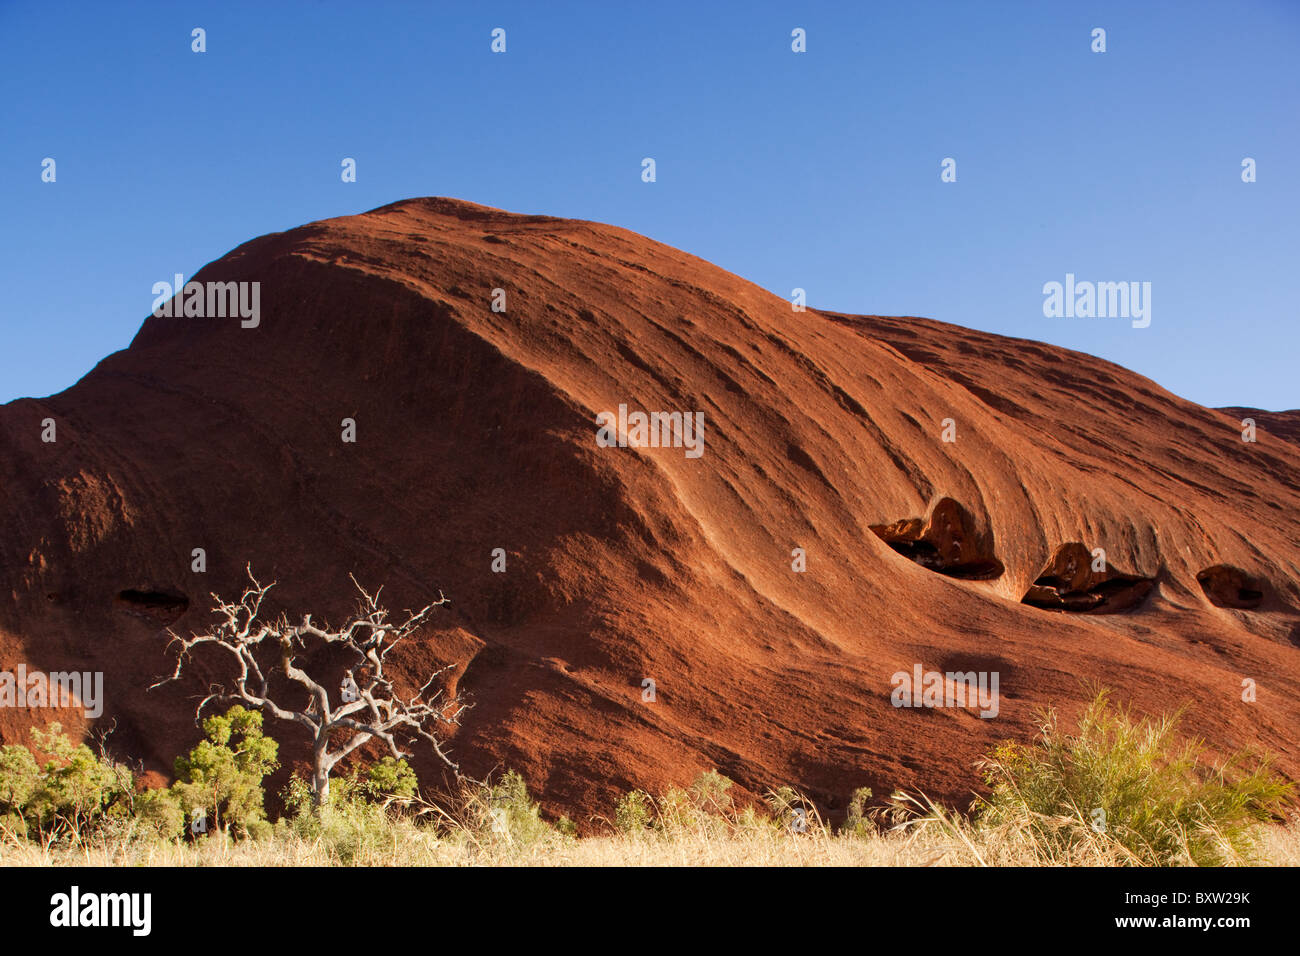 Australien-Northern Territory Uluru - Kata Tjuta National Park Spinifex Gras- und sonnengebleichten Wüste Eiche am roten Felssockel Stockfoto